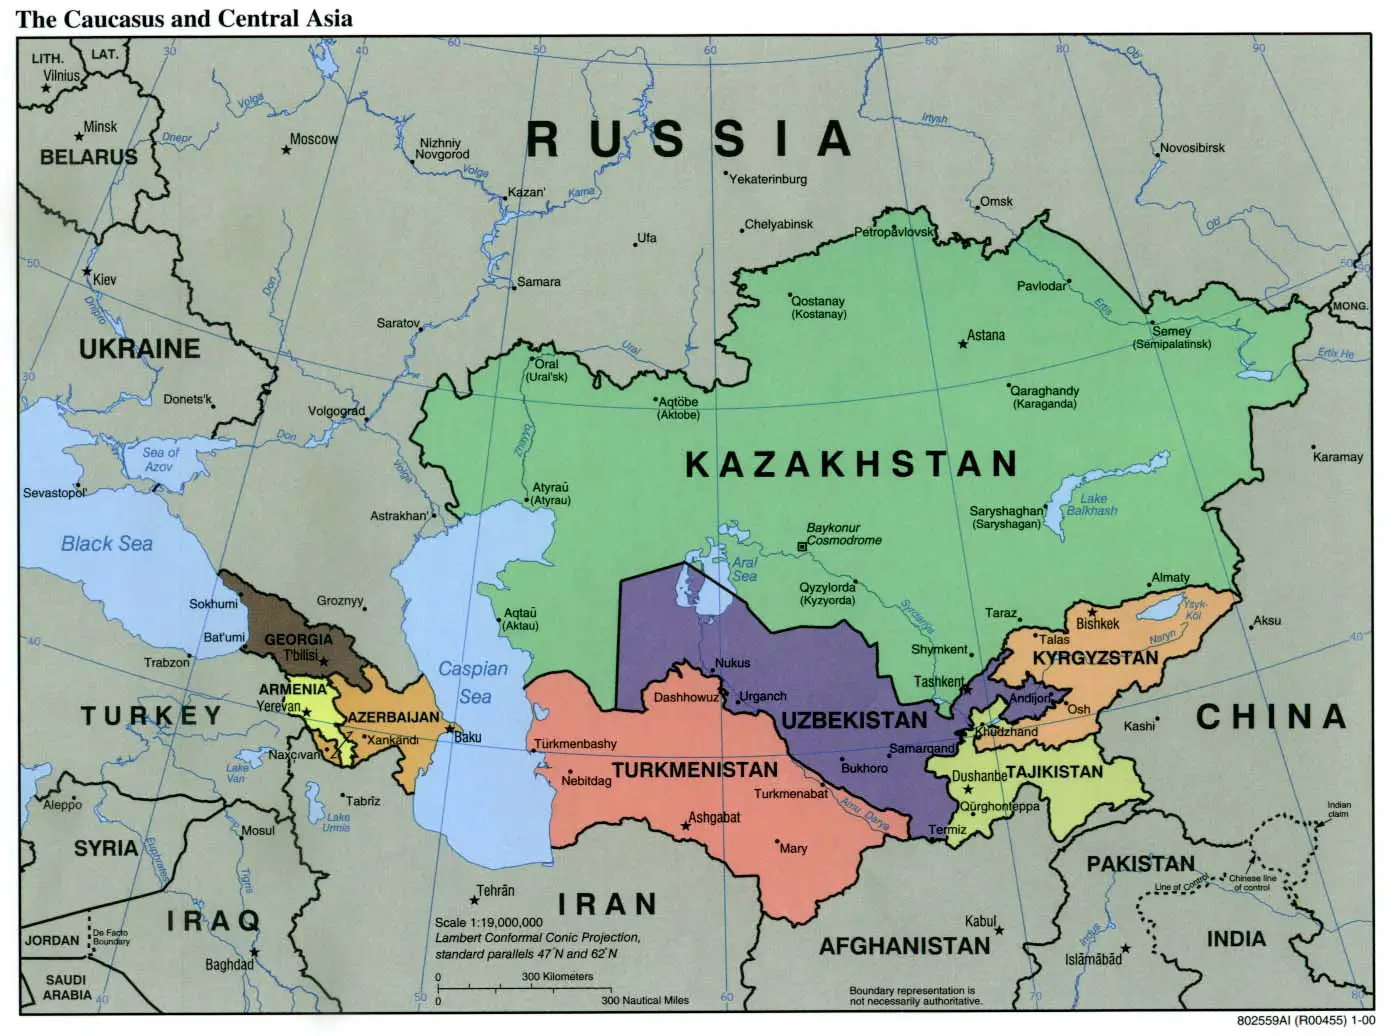 Caucasus Central Asia Political Map 2000 5